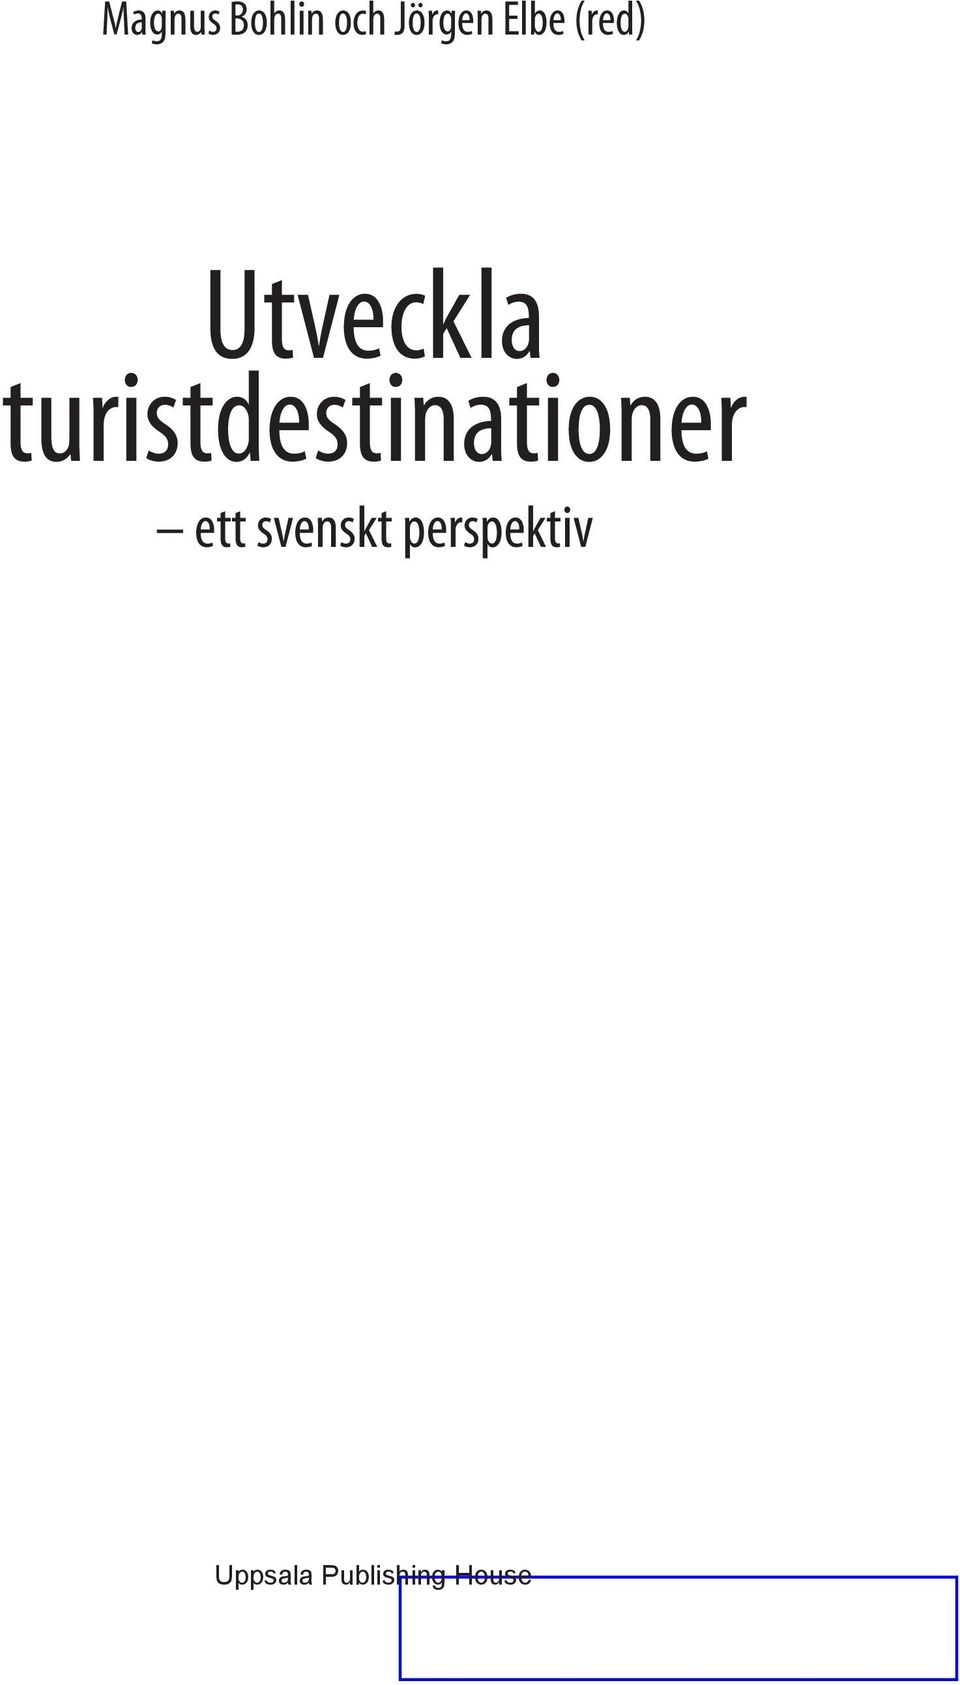 svenskt perspektiv Uppsala Publishing